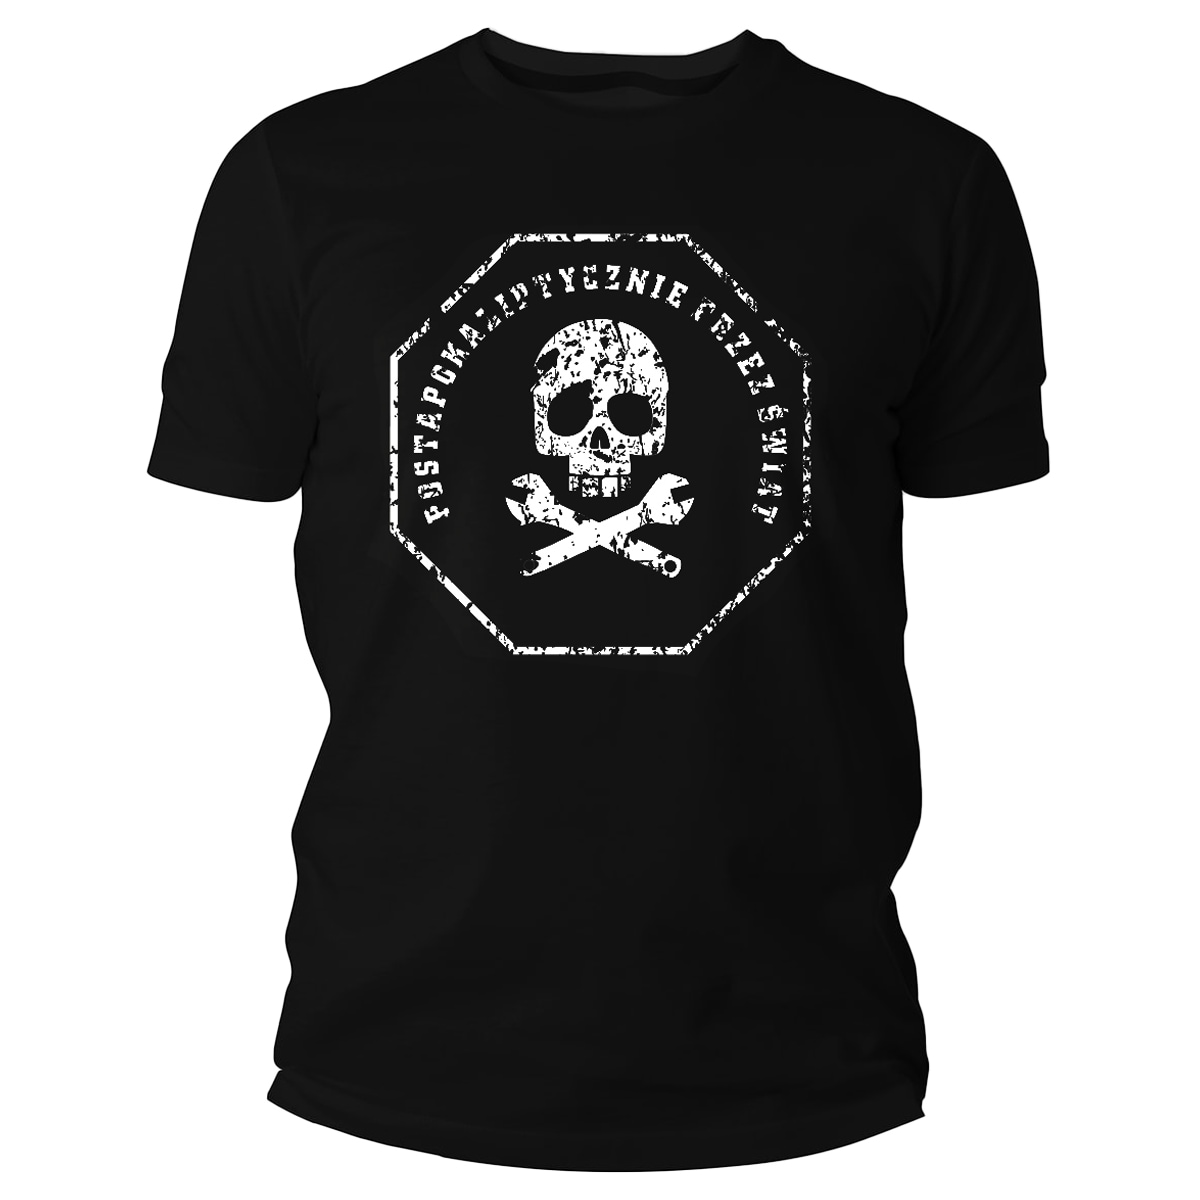 Koszulka T-Shirt TigerWood Postapokaliptycznie - Czarna